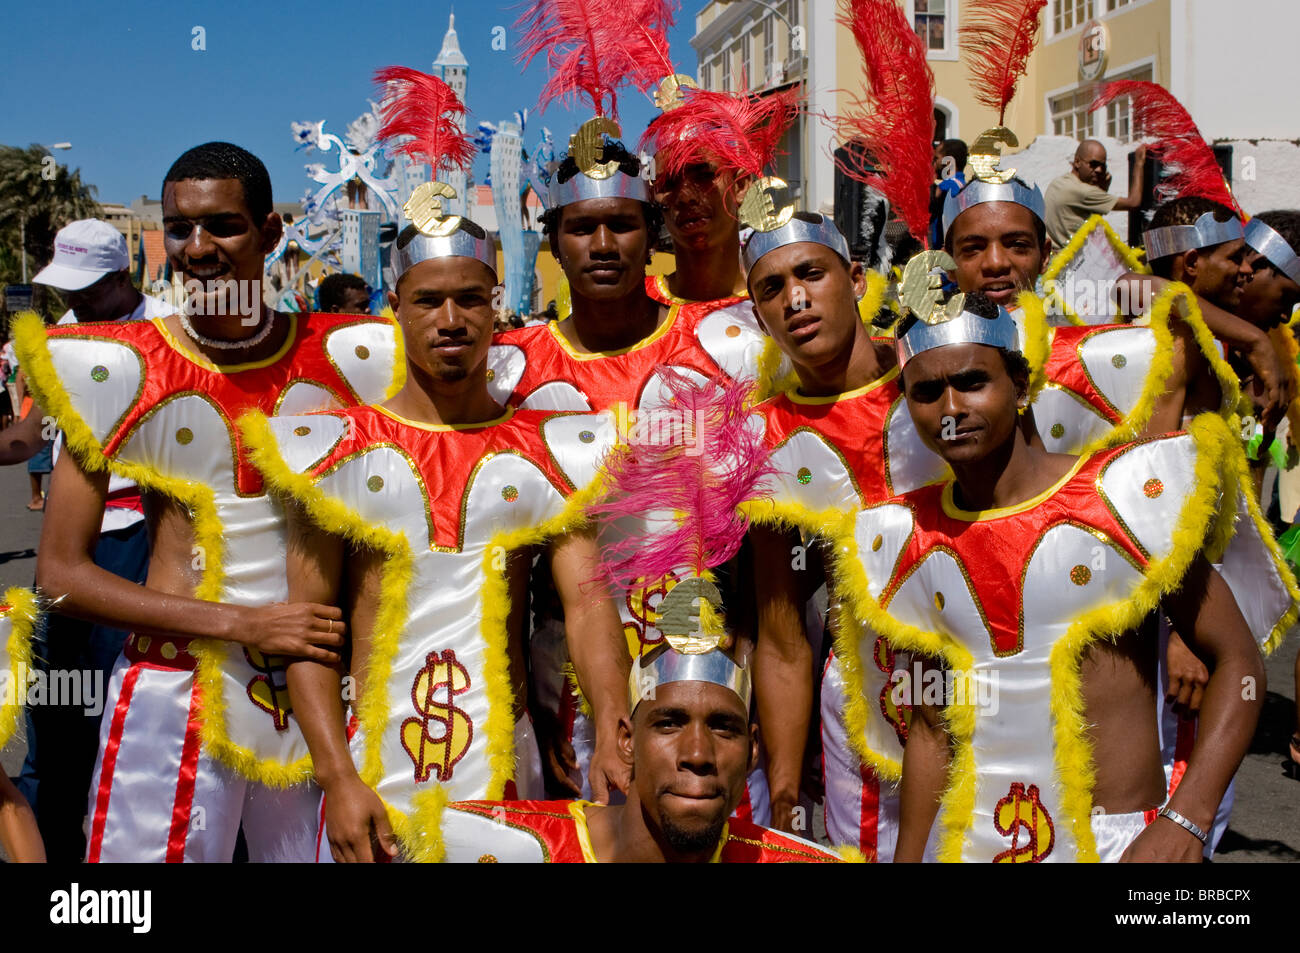 Costumed men celebrating Carnival, Mindelo, Sao Vicente, Cape Verde Stock Photo